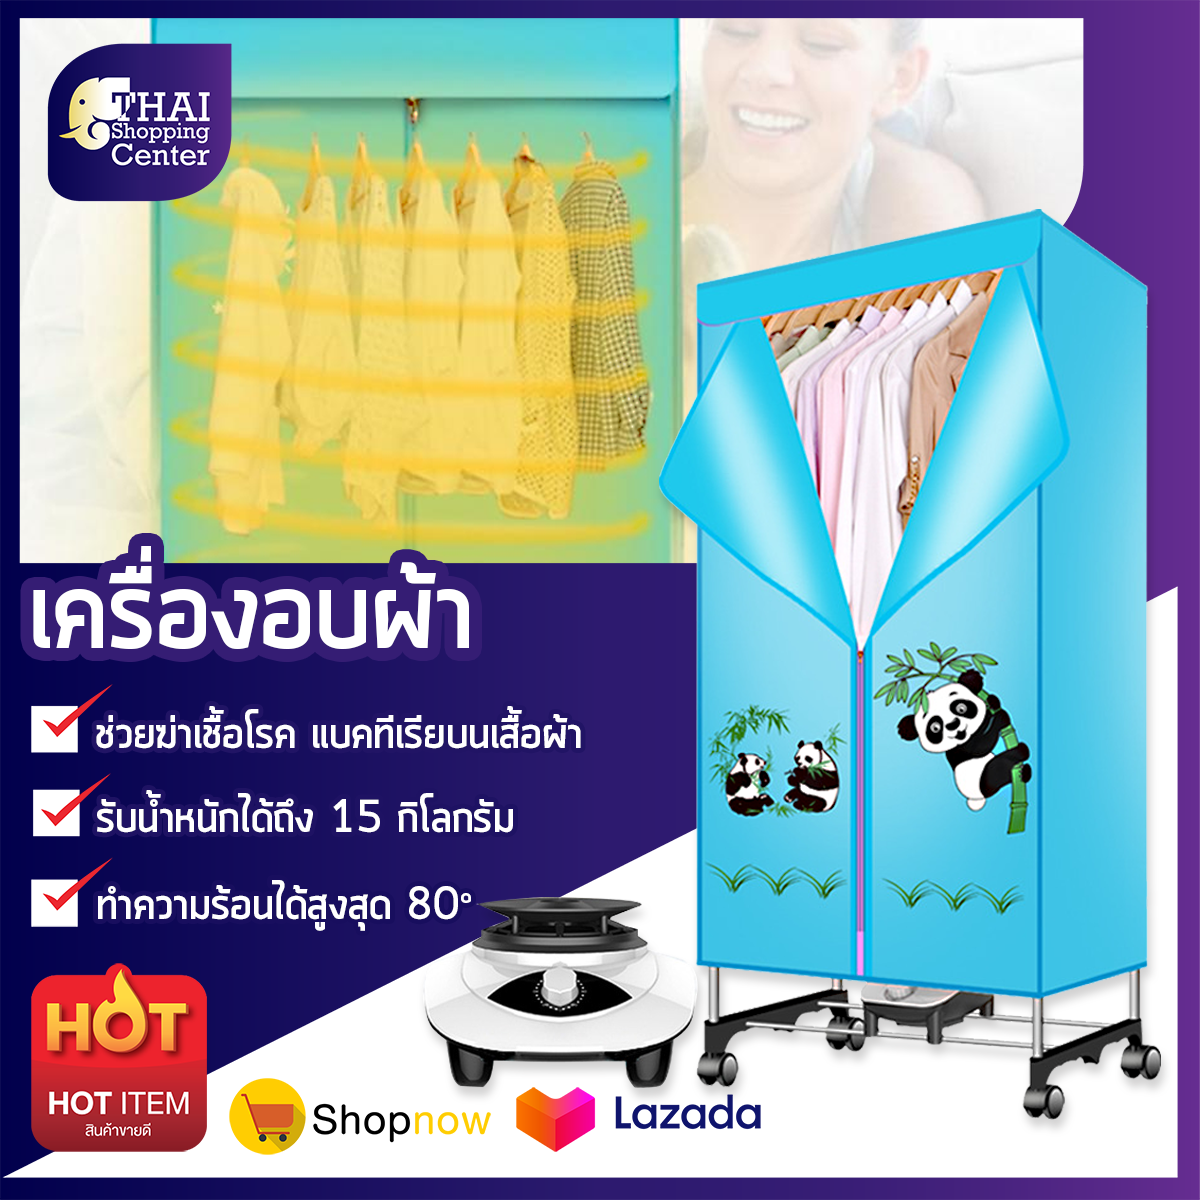 Clothes Dryer Power เครื่องอบผ้า ตู้เสื้อผ้า ตู้อบผ้า ตู้อบเสื้อผ้า ตากผ้าแห้ง 1000w Thai Shopping Center